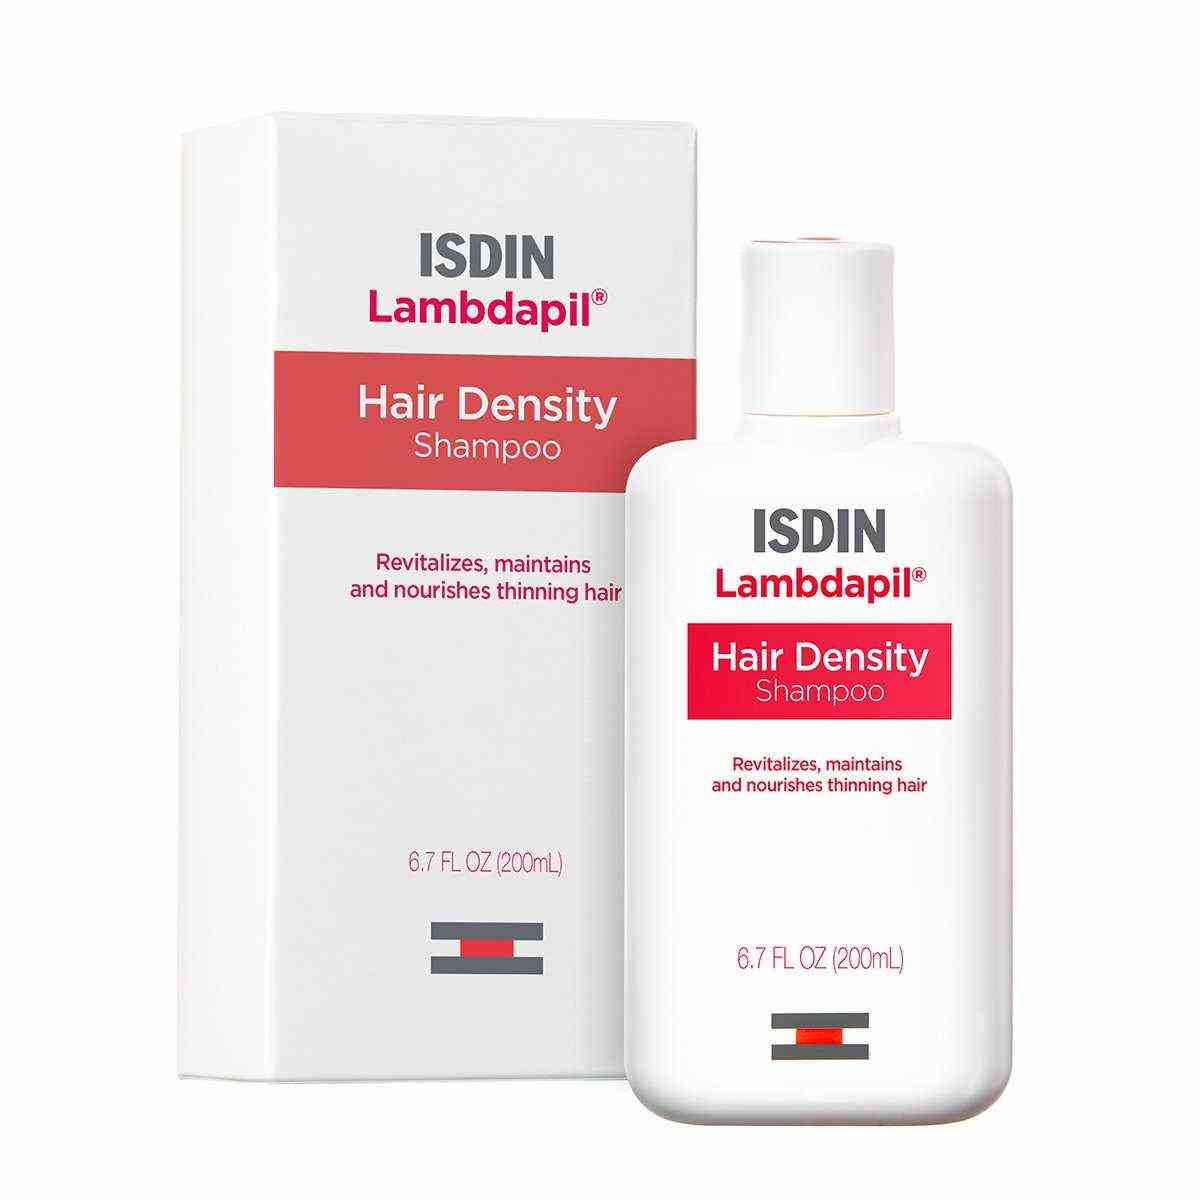 ISDIN Lambdapil Haarausfall-Shampoo auf weißem Hintergrund